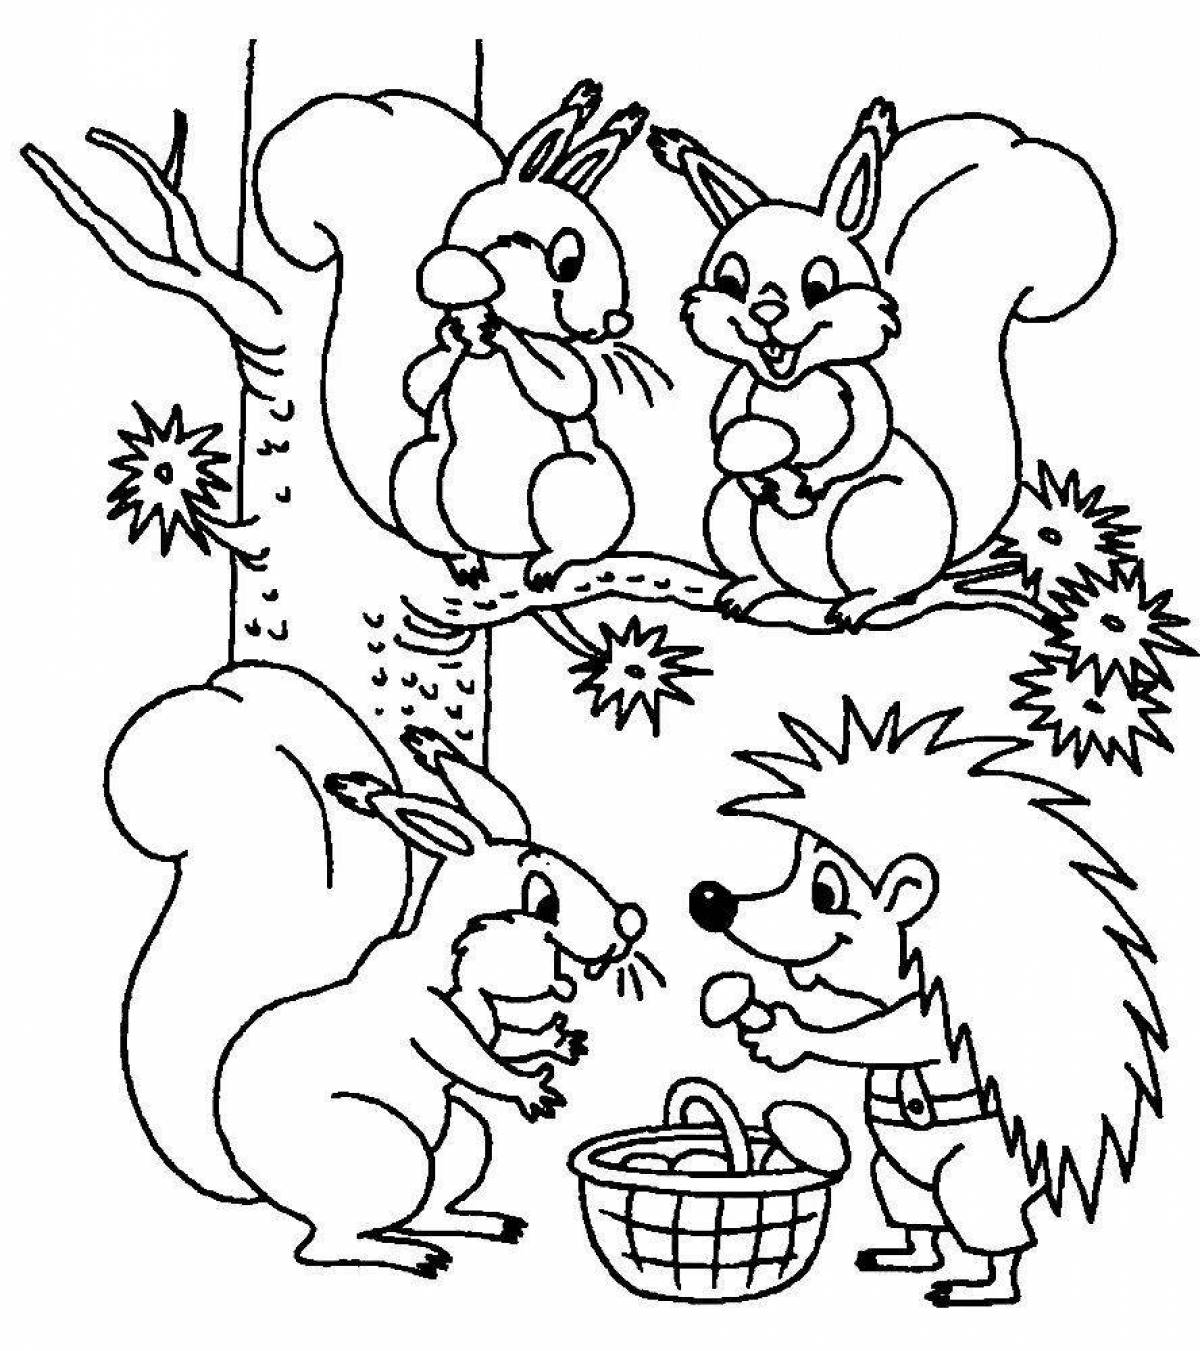 Милая раскраска лесных животных для детей 3-4 лет